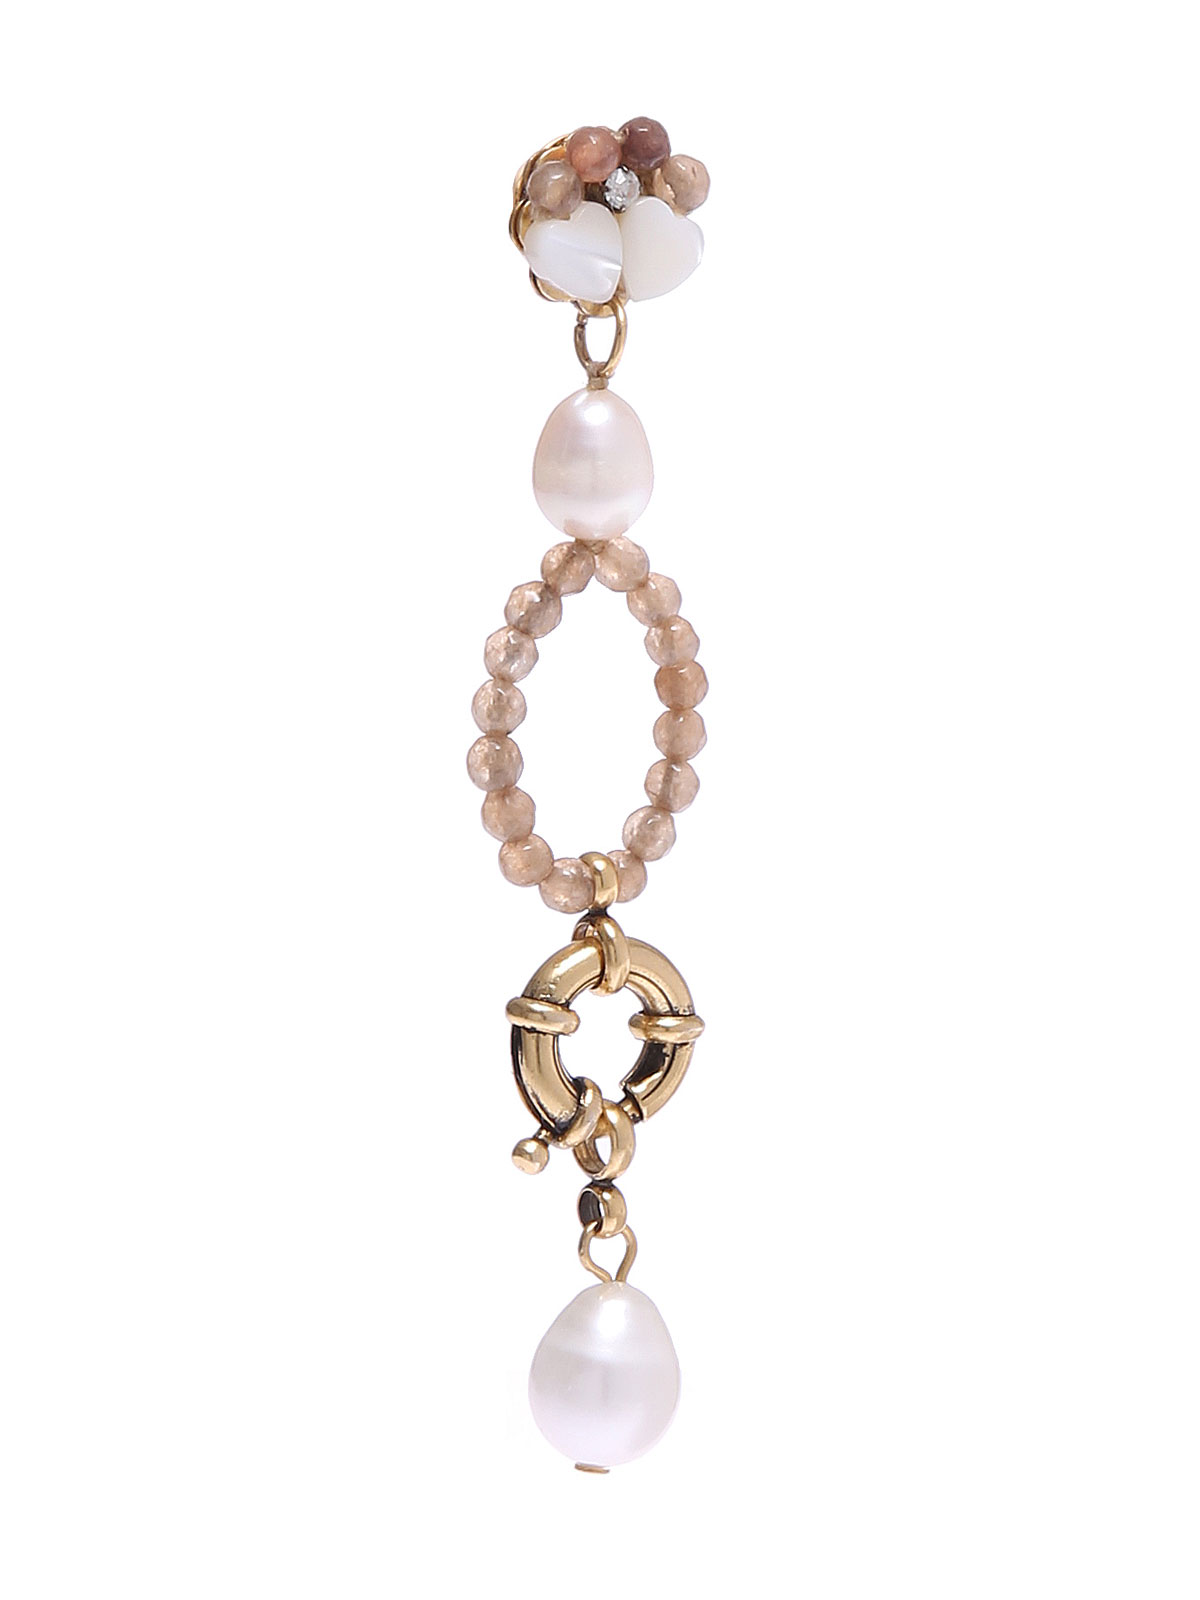 Jade earrings with freshwater pearls